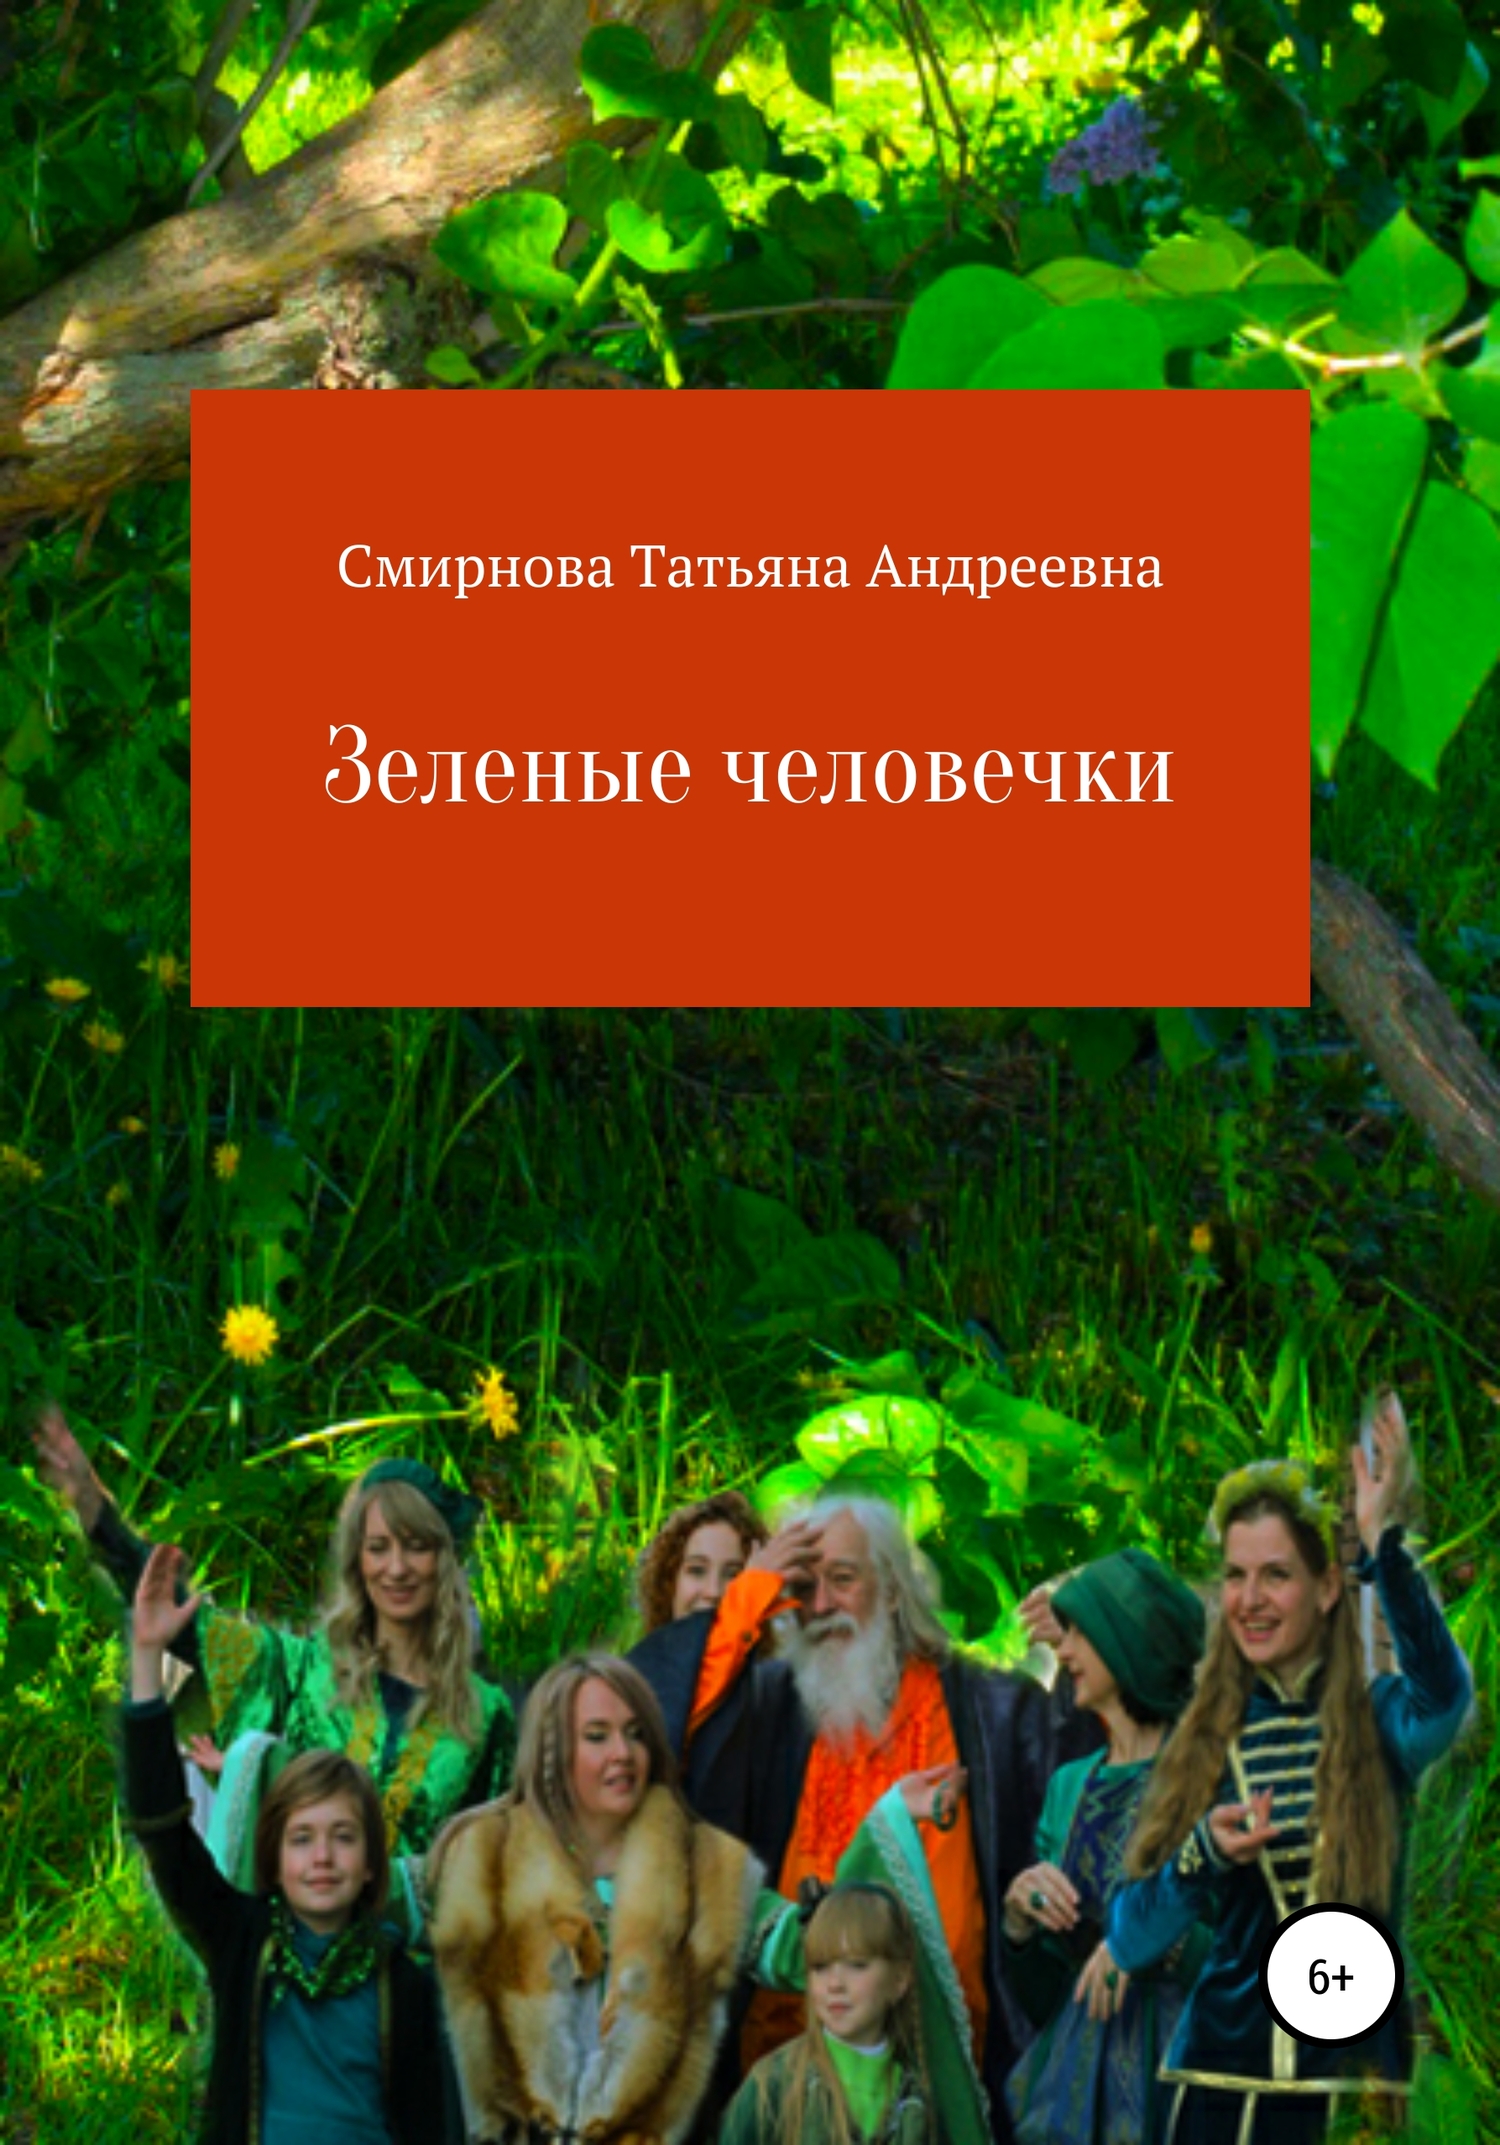 Зеленые человечки - Татьяна Андреевна Смирнова